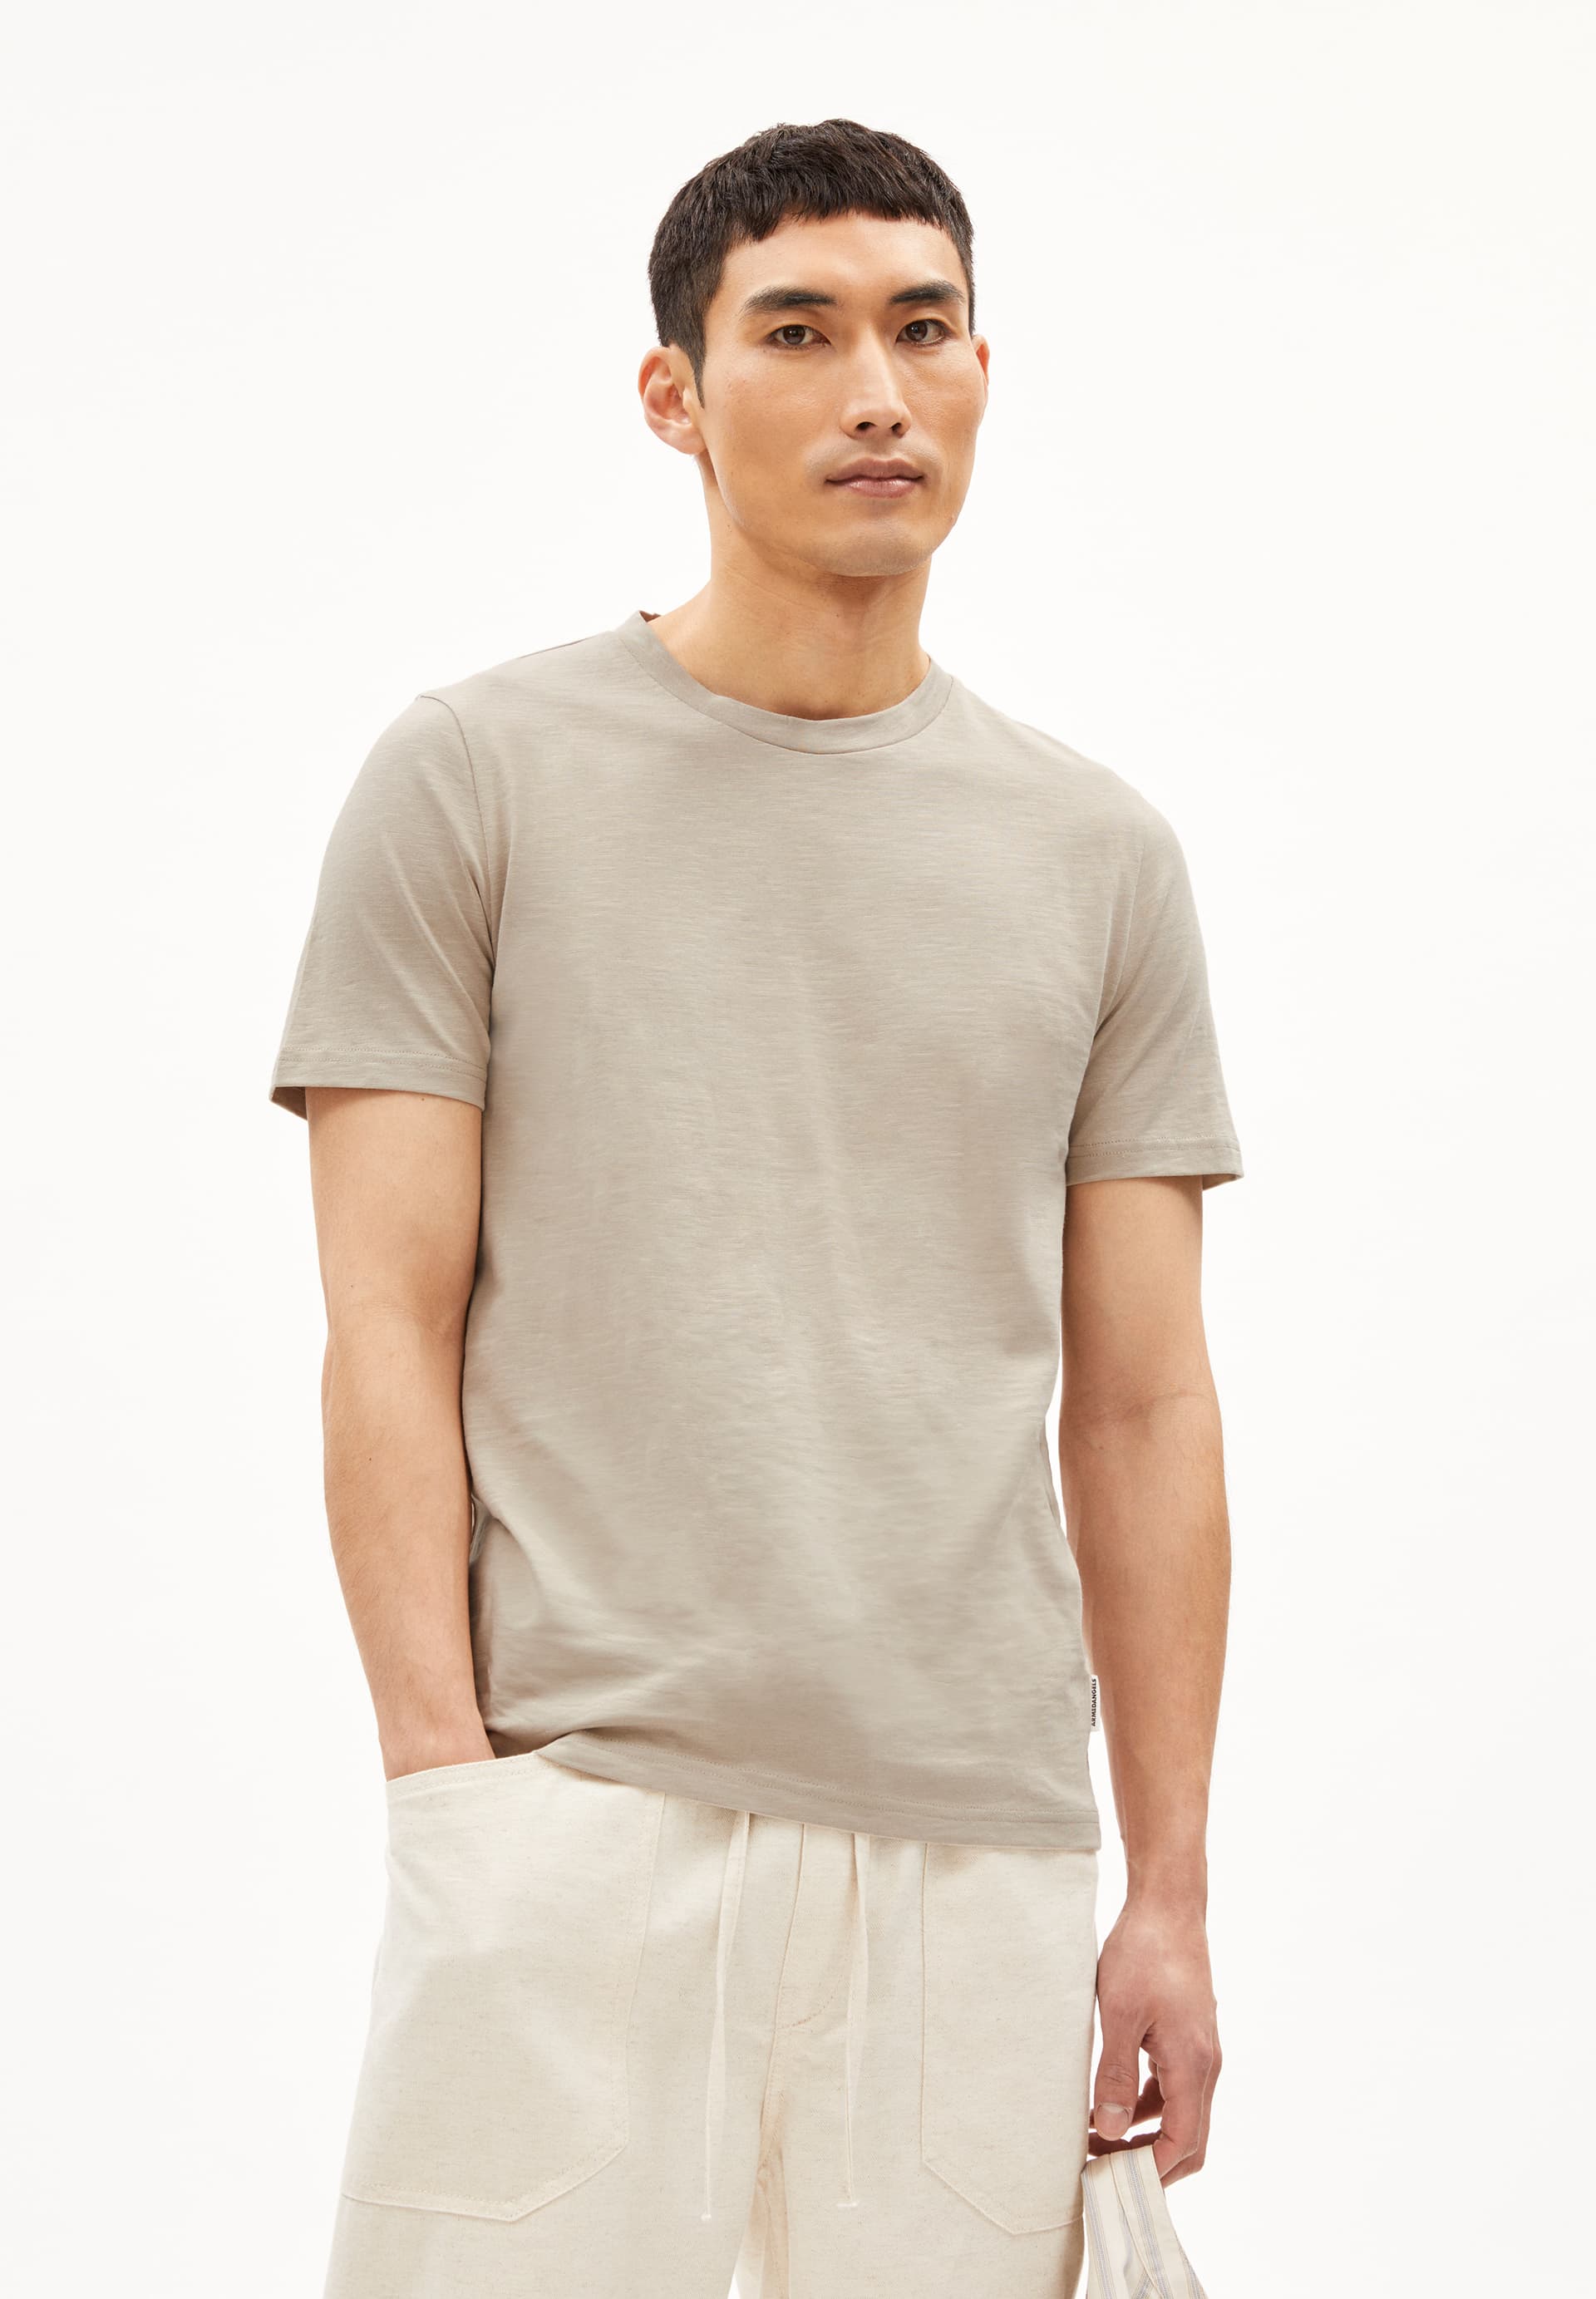 JAAMEL STRUCTURE Heavyweight T-Shirt Regular Fit made of Organic Cotton